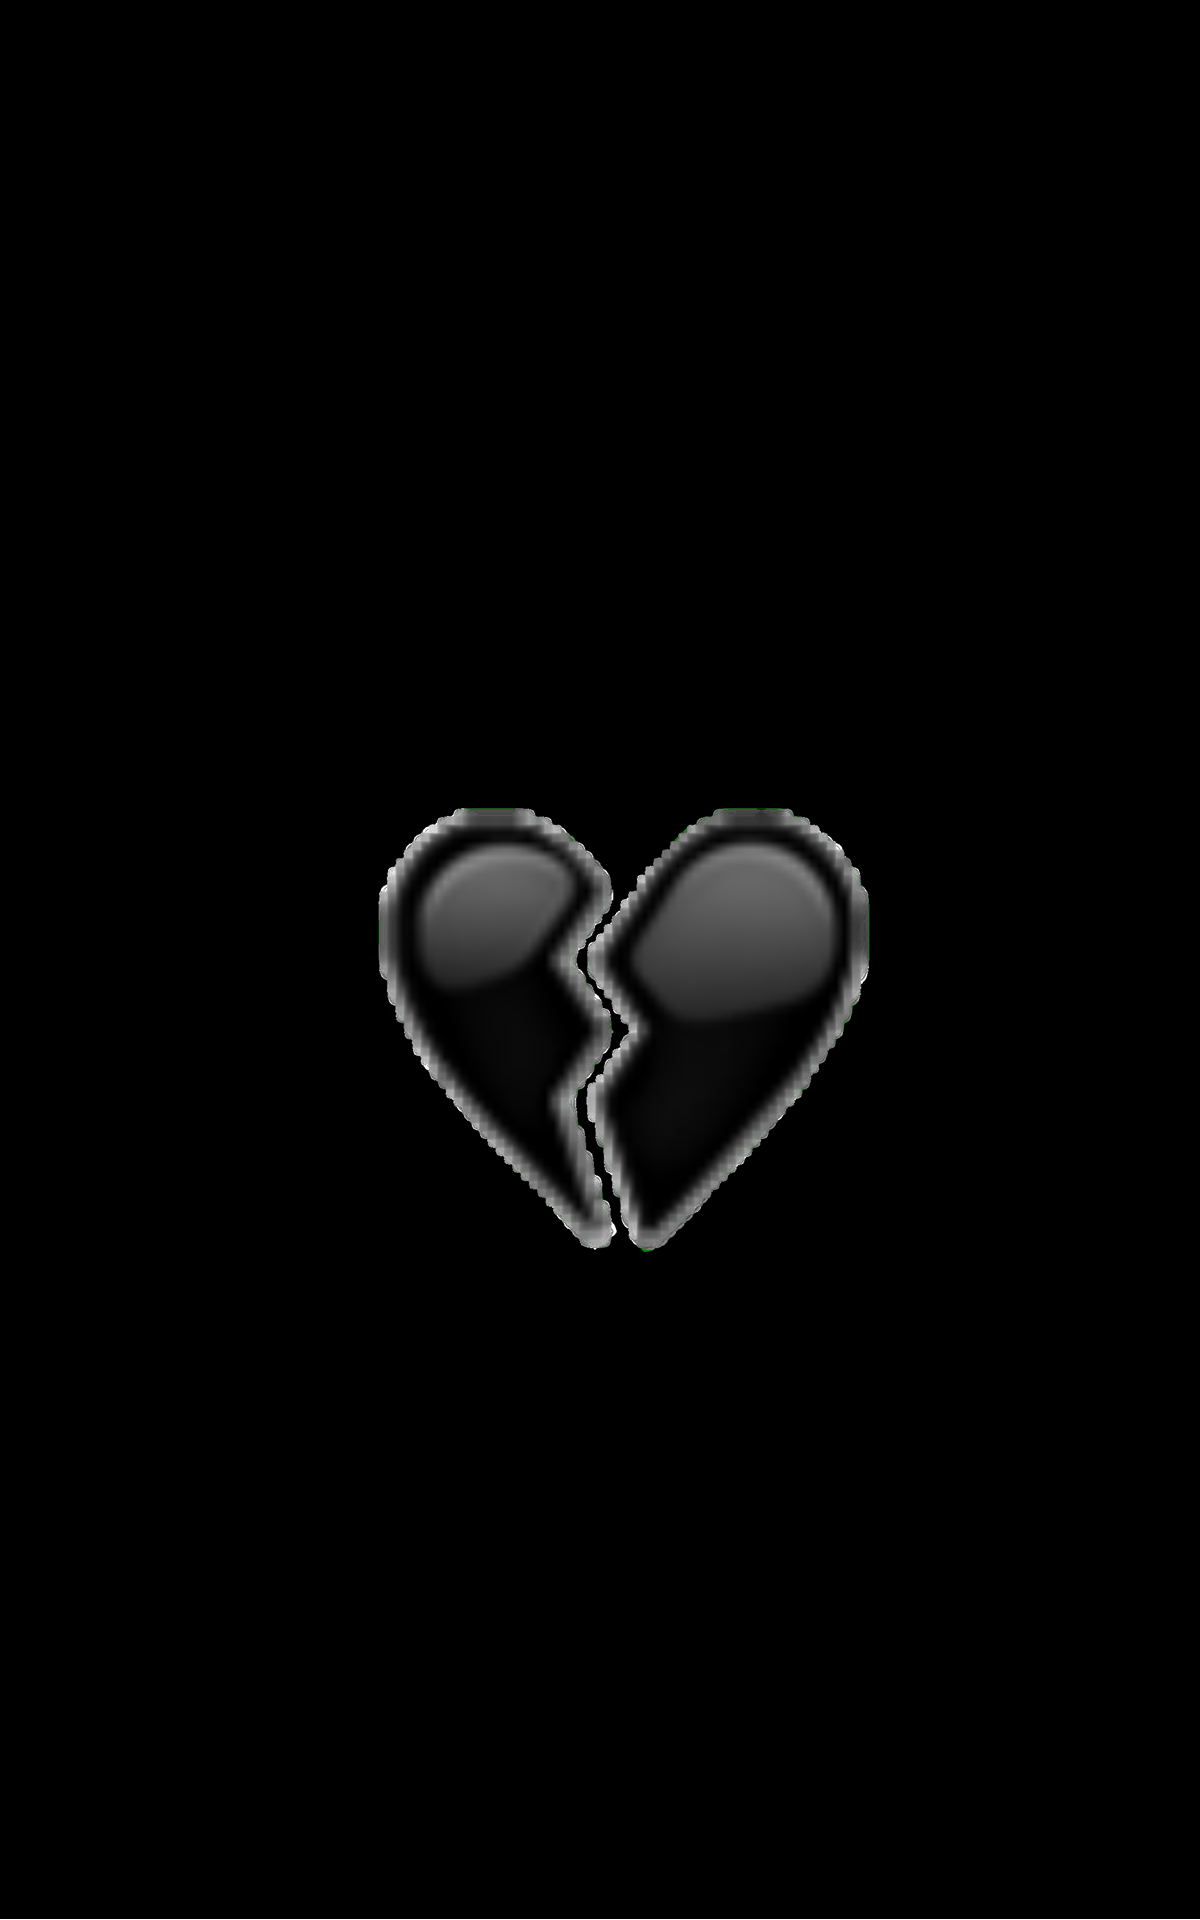 Ảnh trái khoáy tim vỡ black color rất đẹp nhất